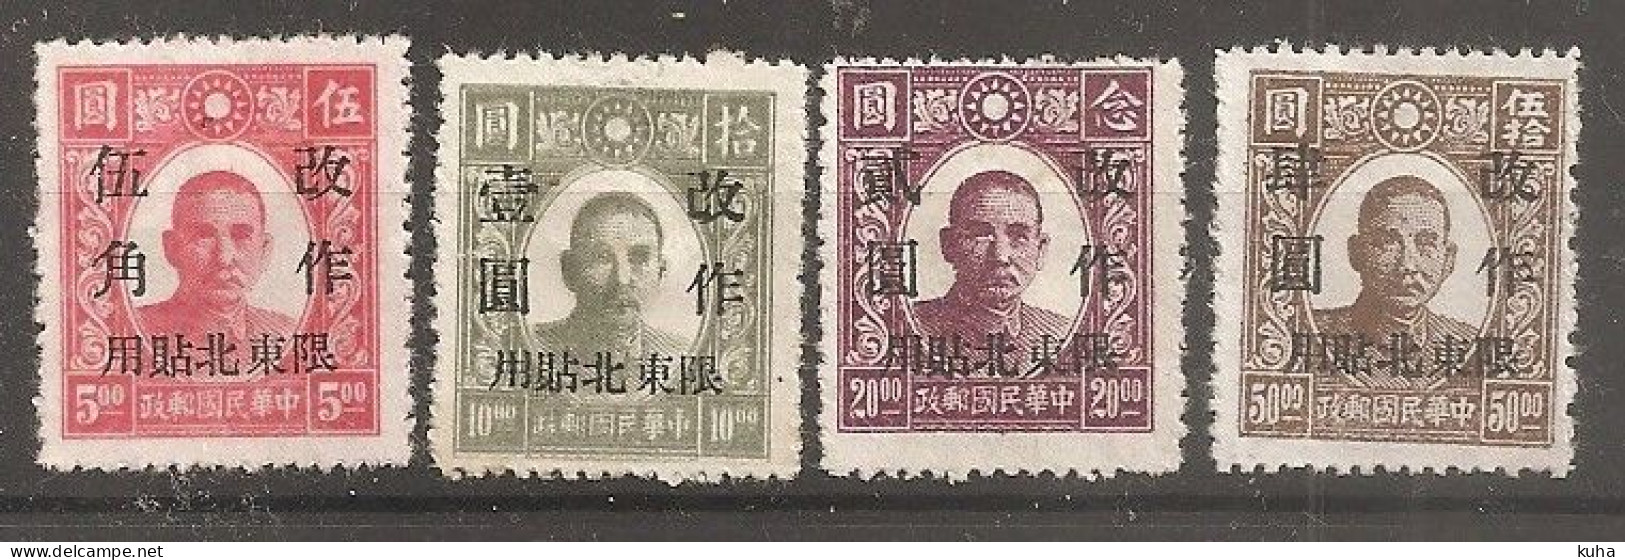 China Chine 1947 North Est China   MvLH - Northern China 1949-50